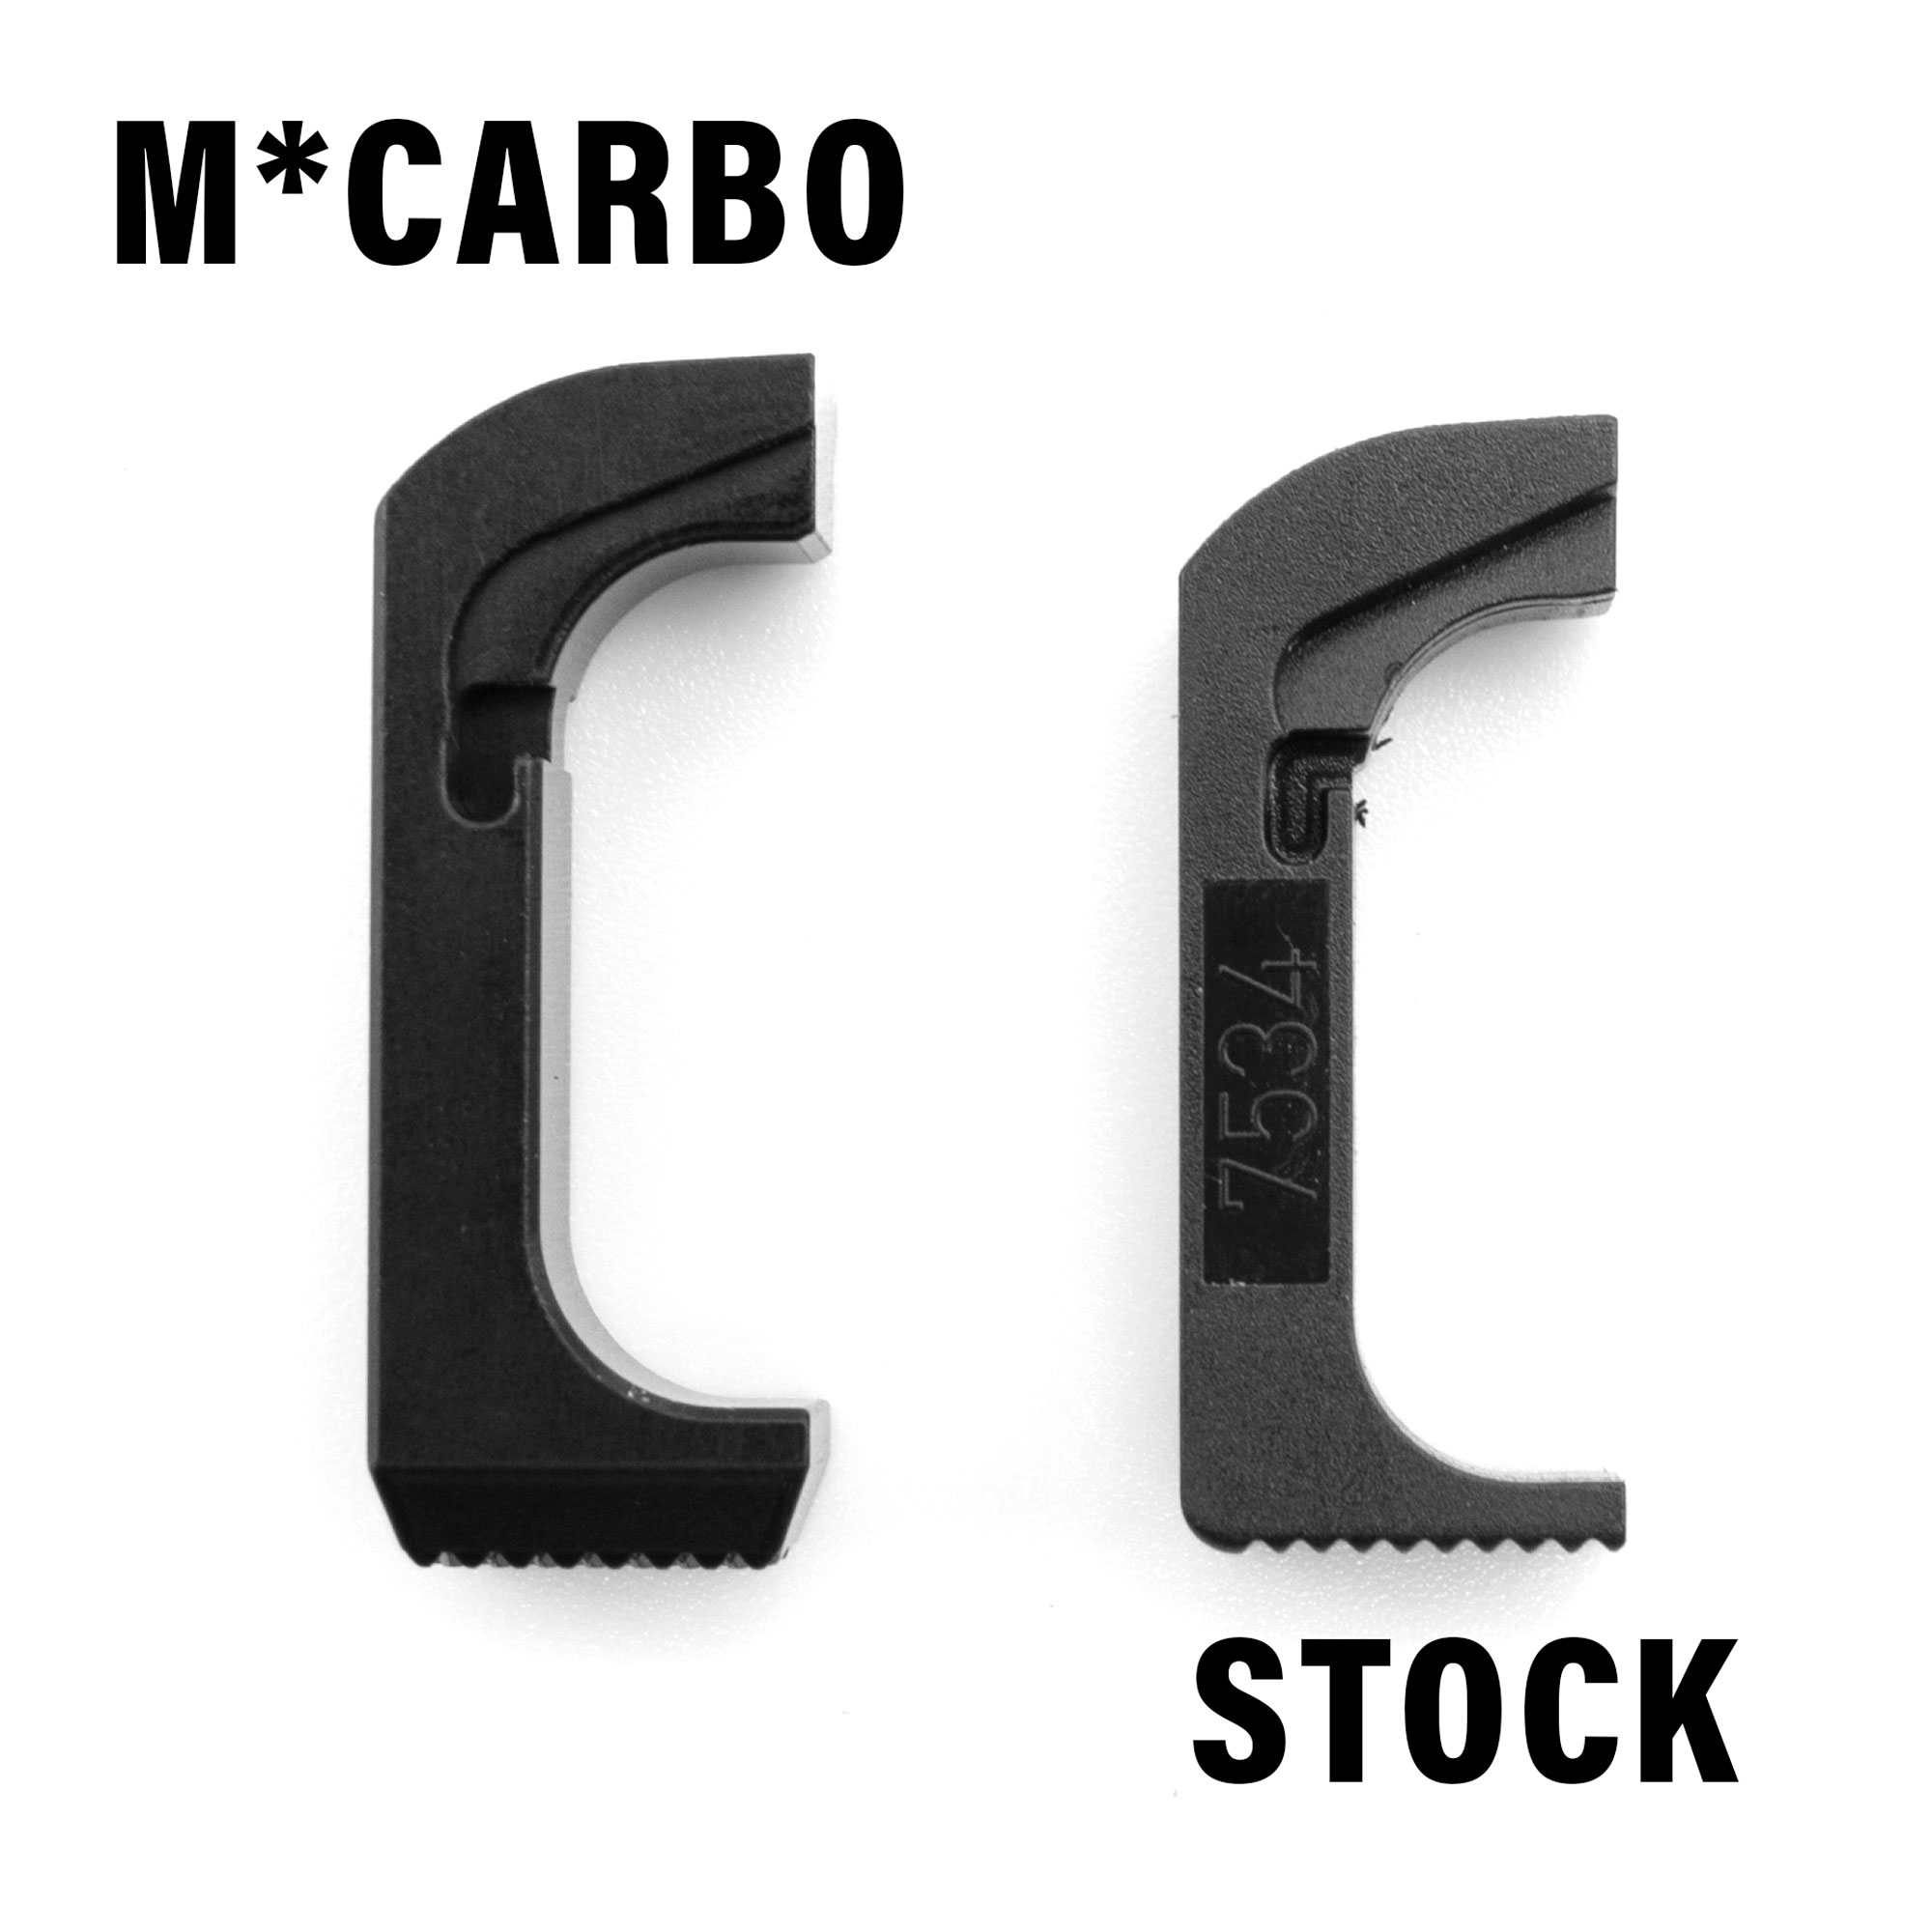 Stock vs M*CARBO Mag Release Comparison